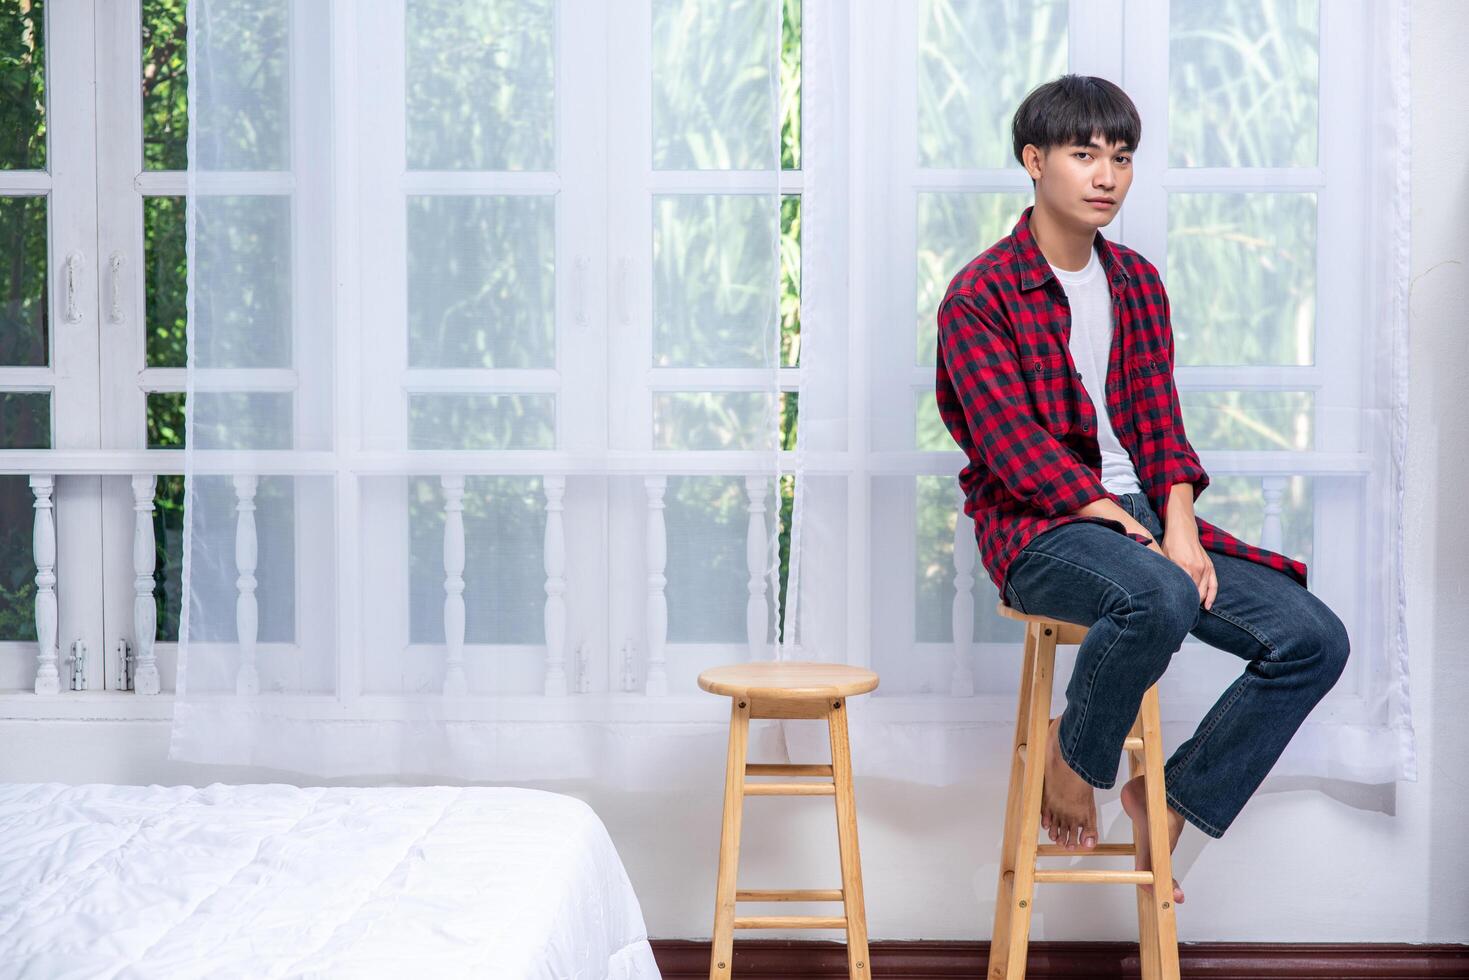 um jovem com uma camisa listrada está sentado em uma cadeira alta. foto